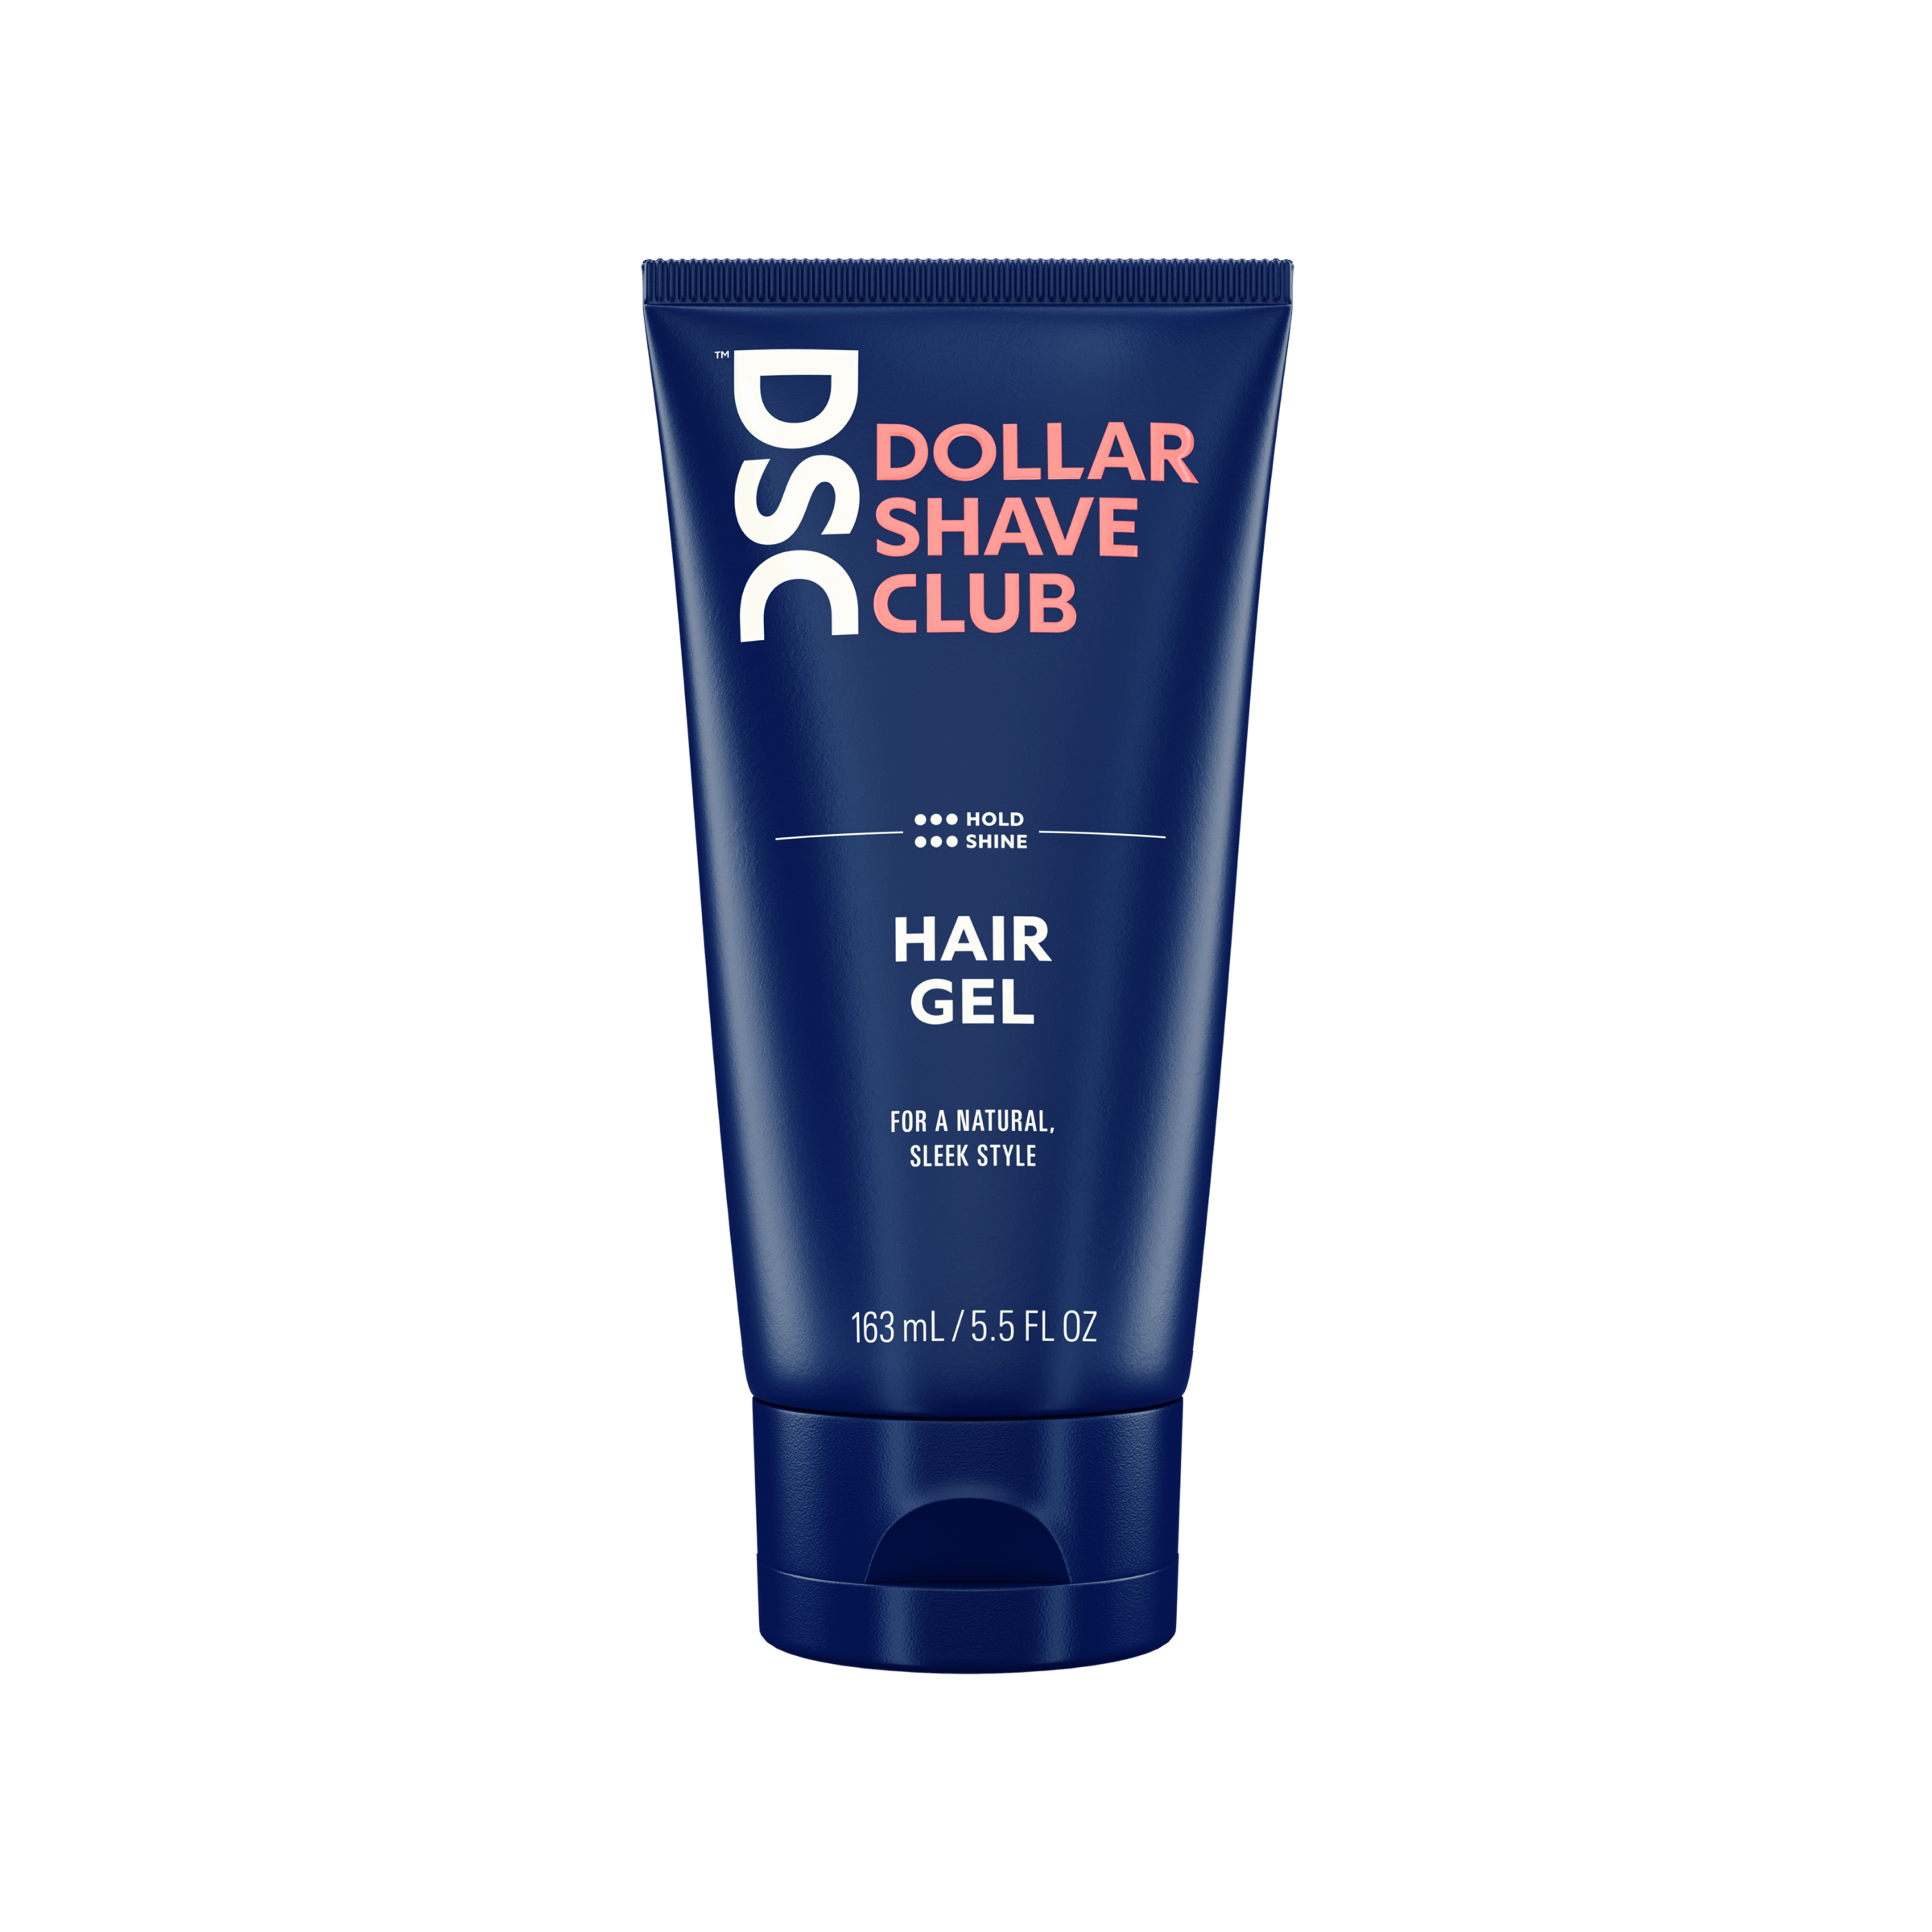 Dollar Shave Club Hair Gel against blank backdrop.